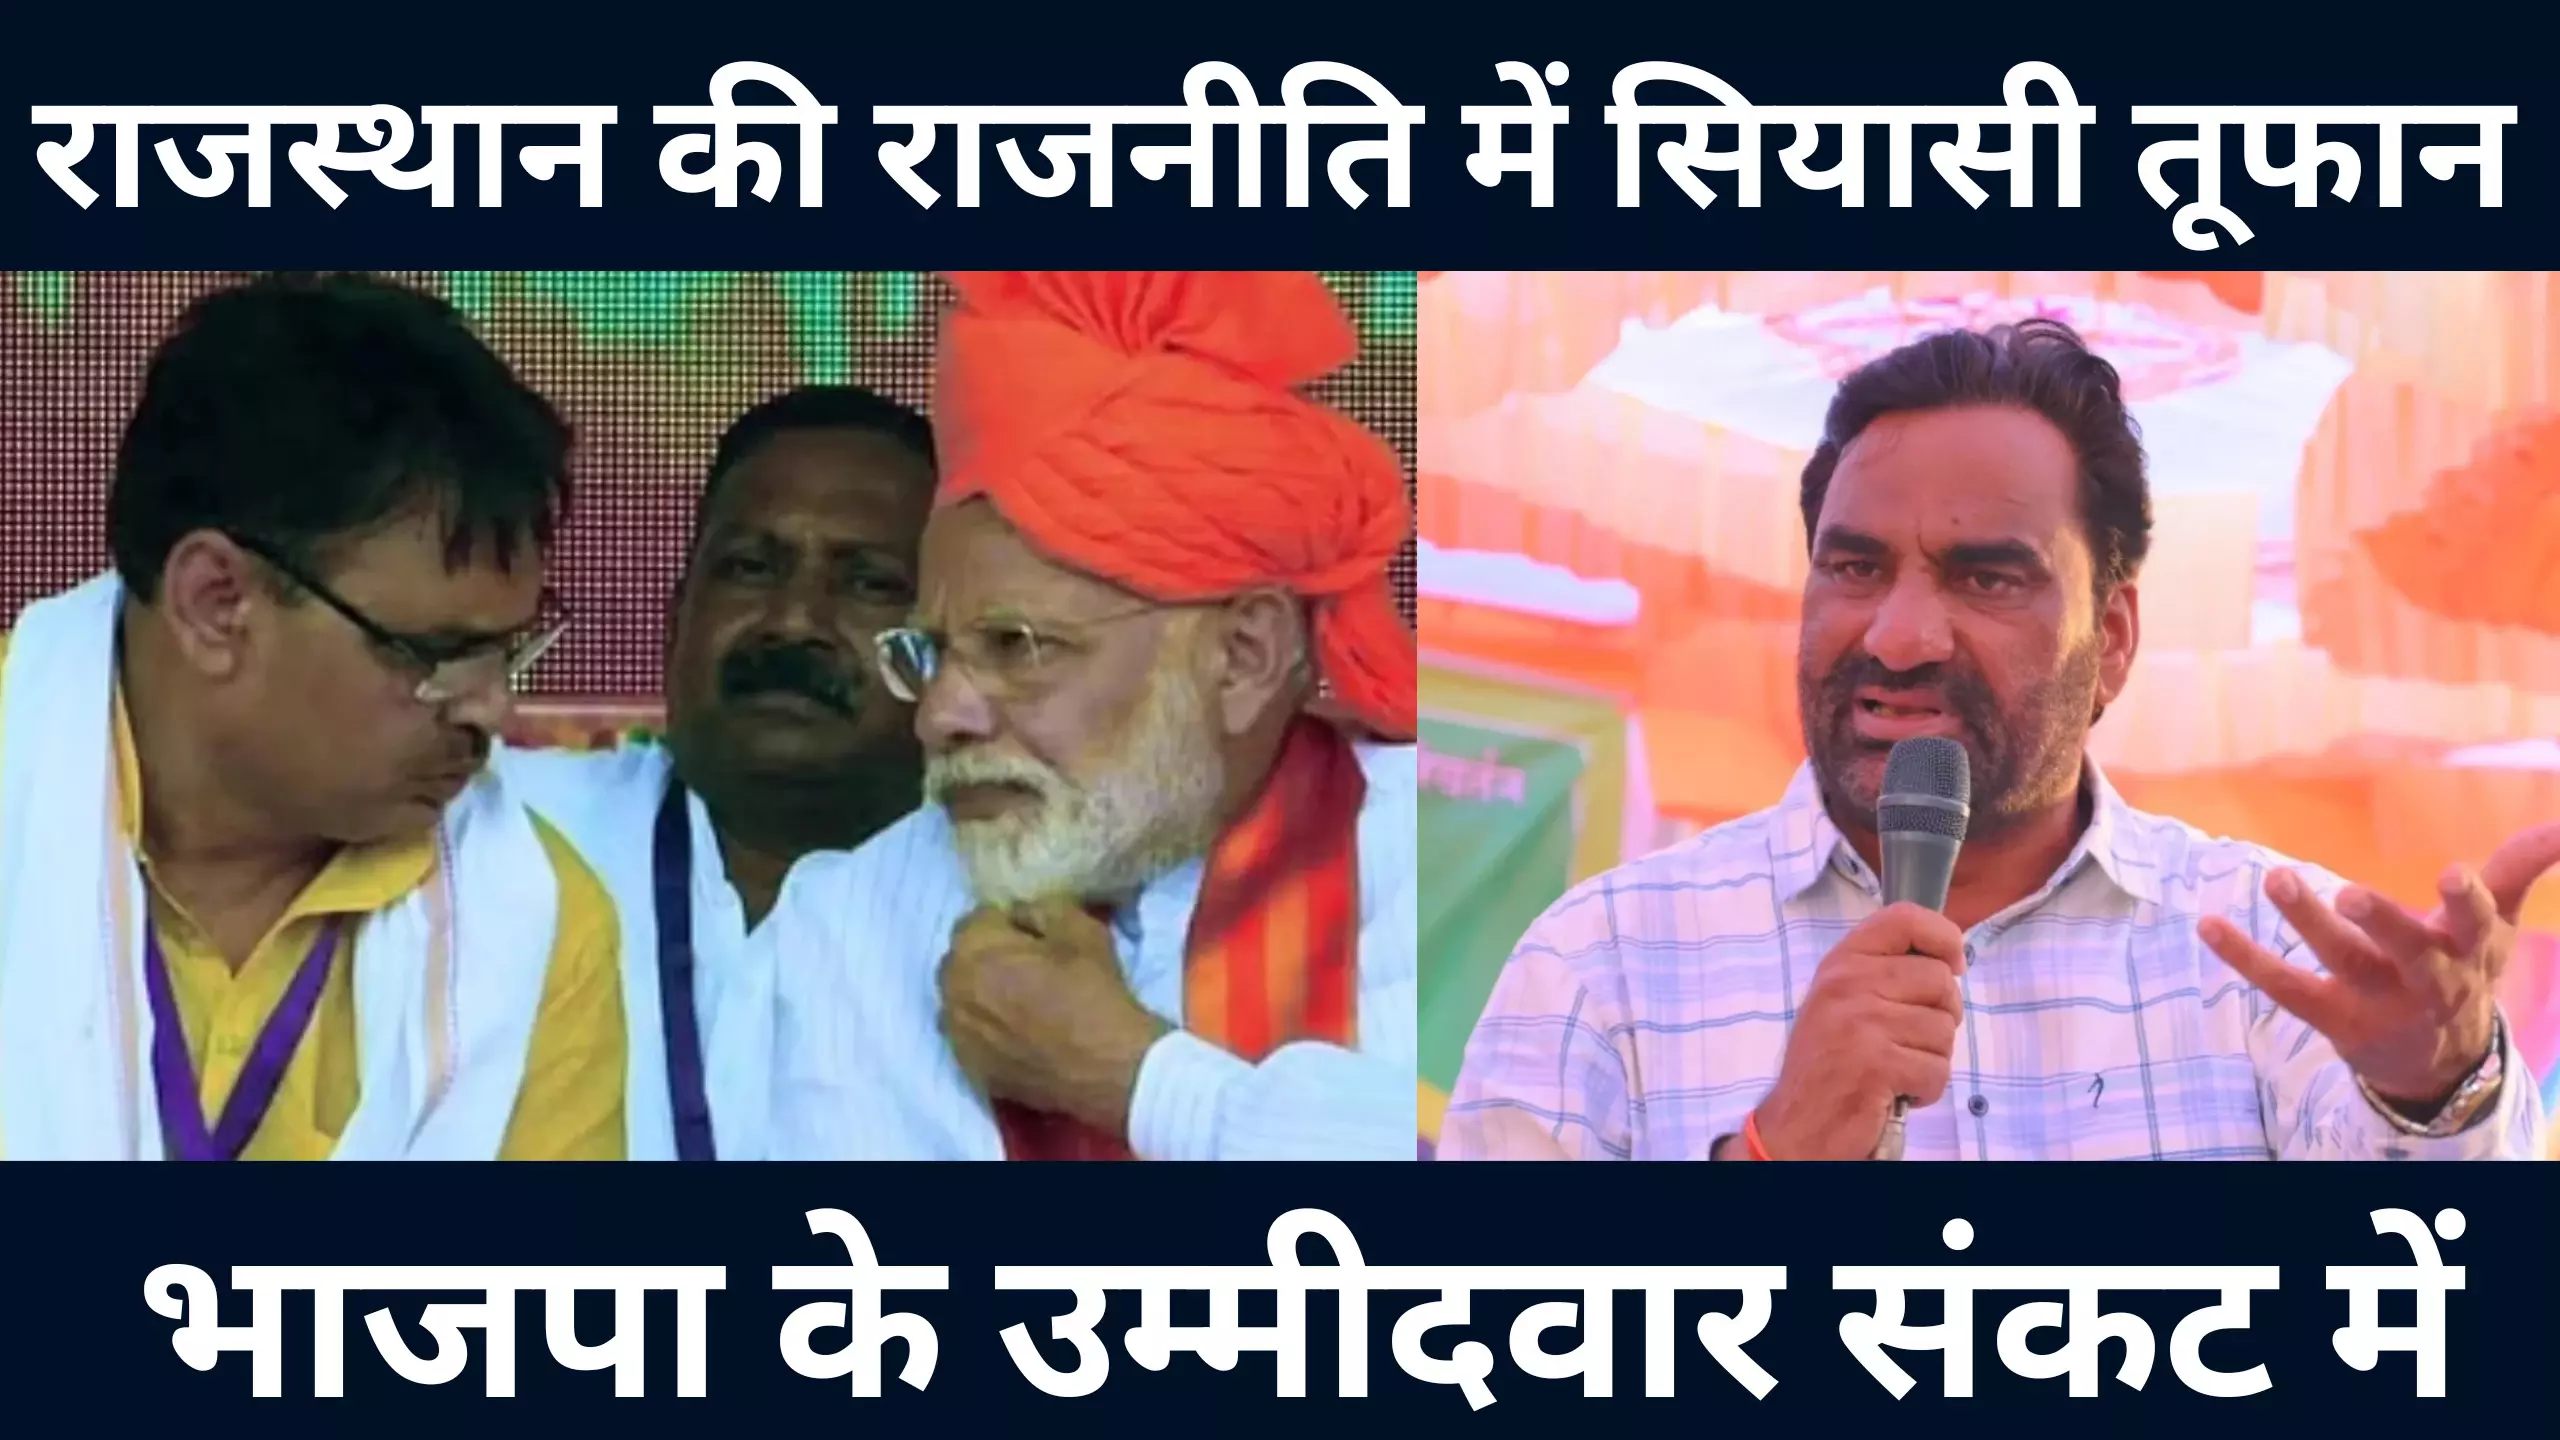 राजस्थान में BJP के लिए संकट खड़ा, हनुमान जी बीजेपी लंका जला देंगे